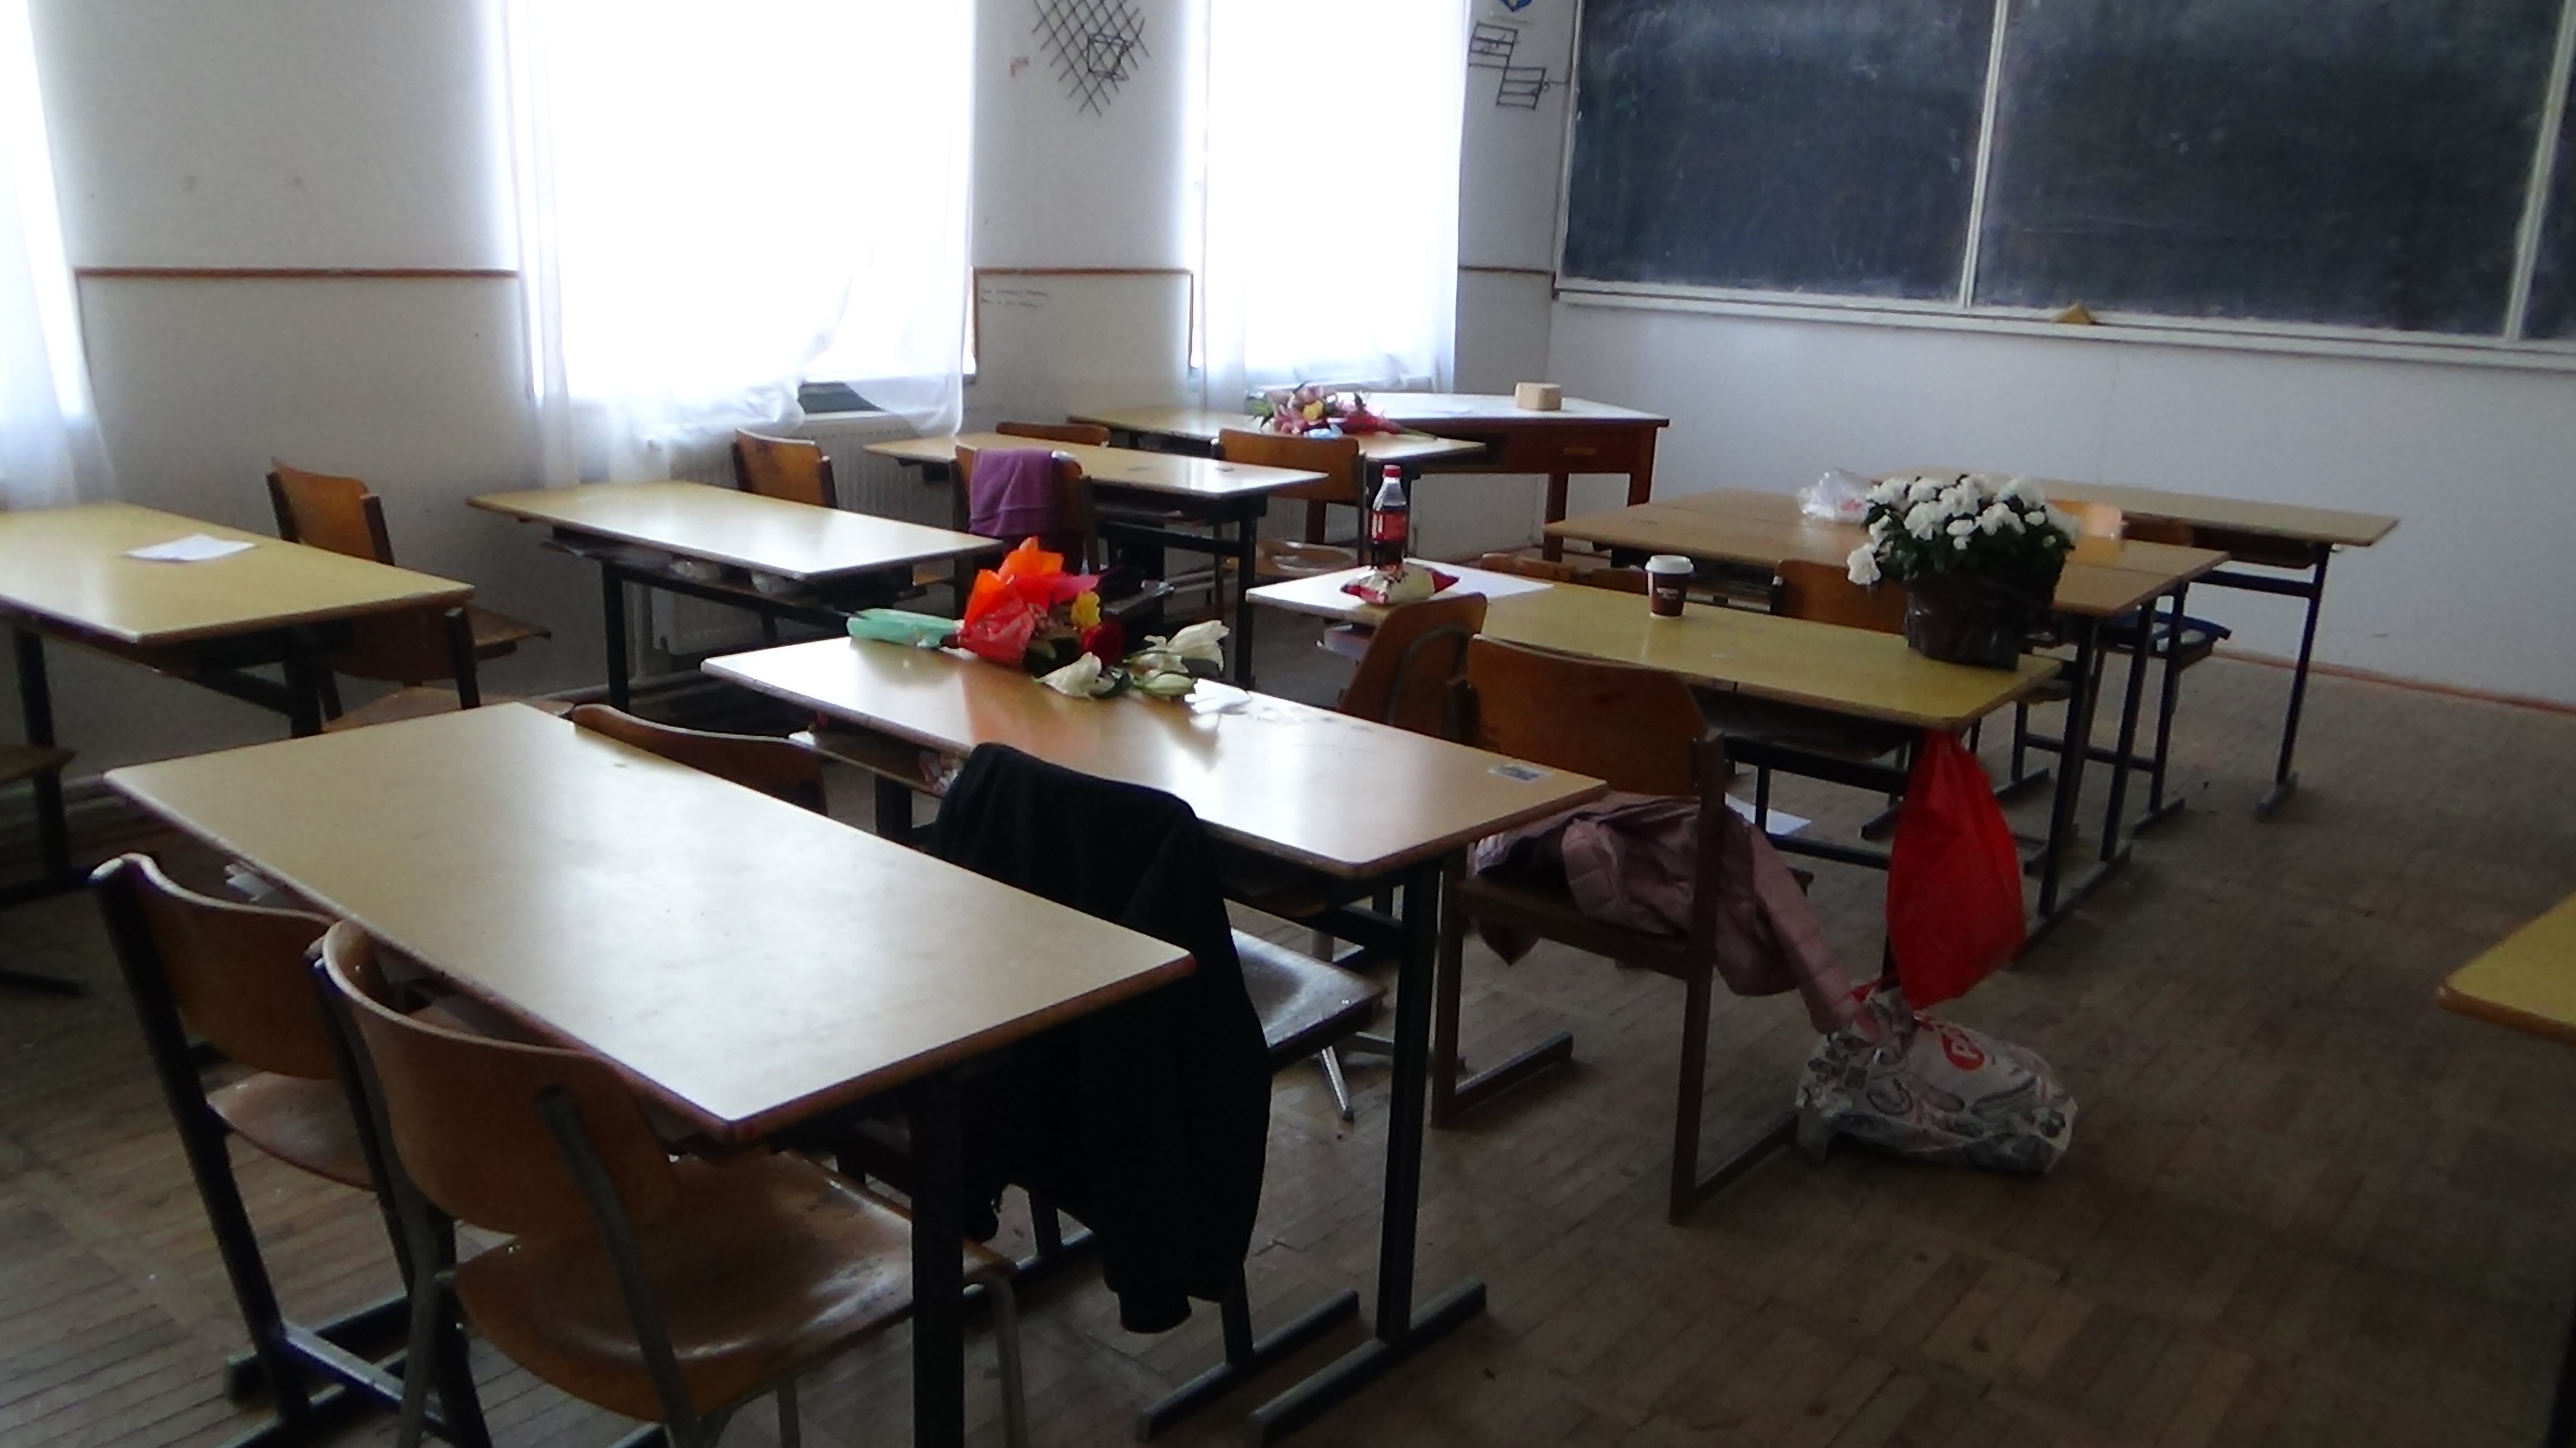 Amenintare cu bomba la liceul Tata Oancea din Bocsa din Caras Severin VIDEO EXCLUSIV